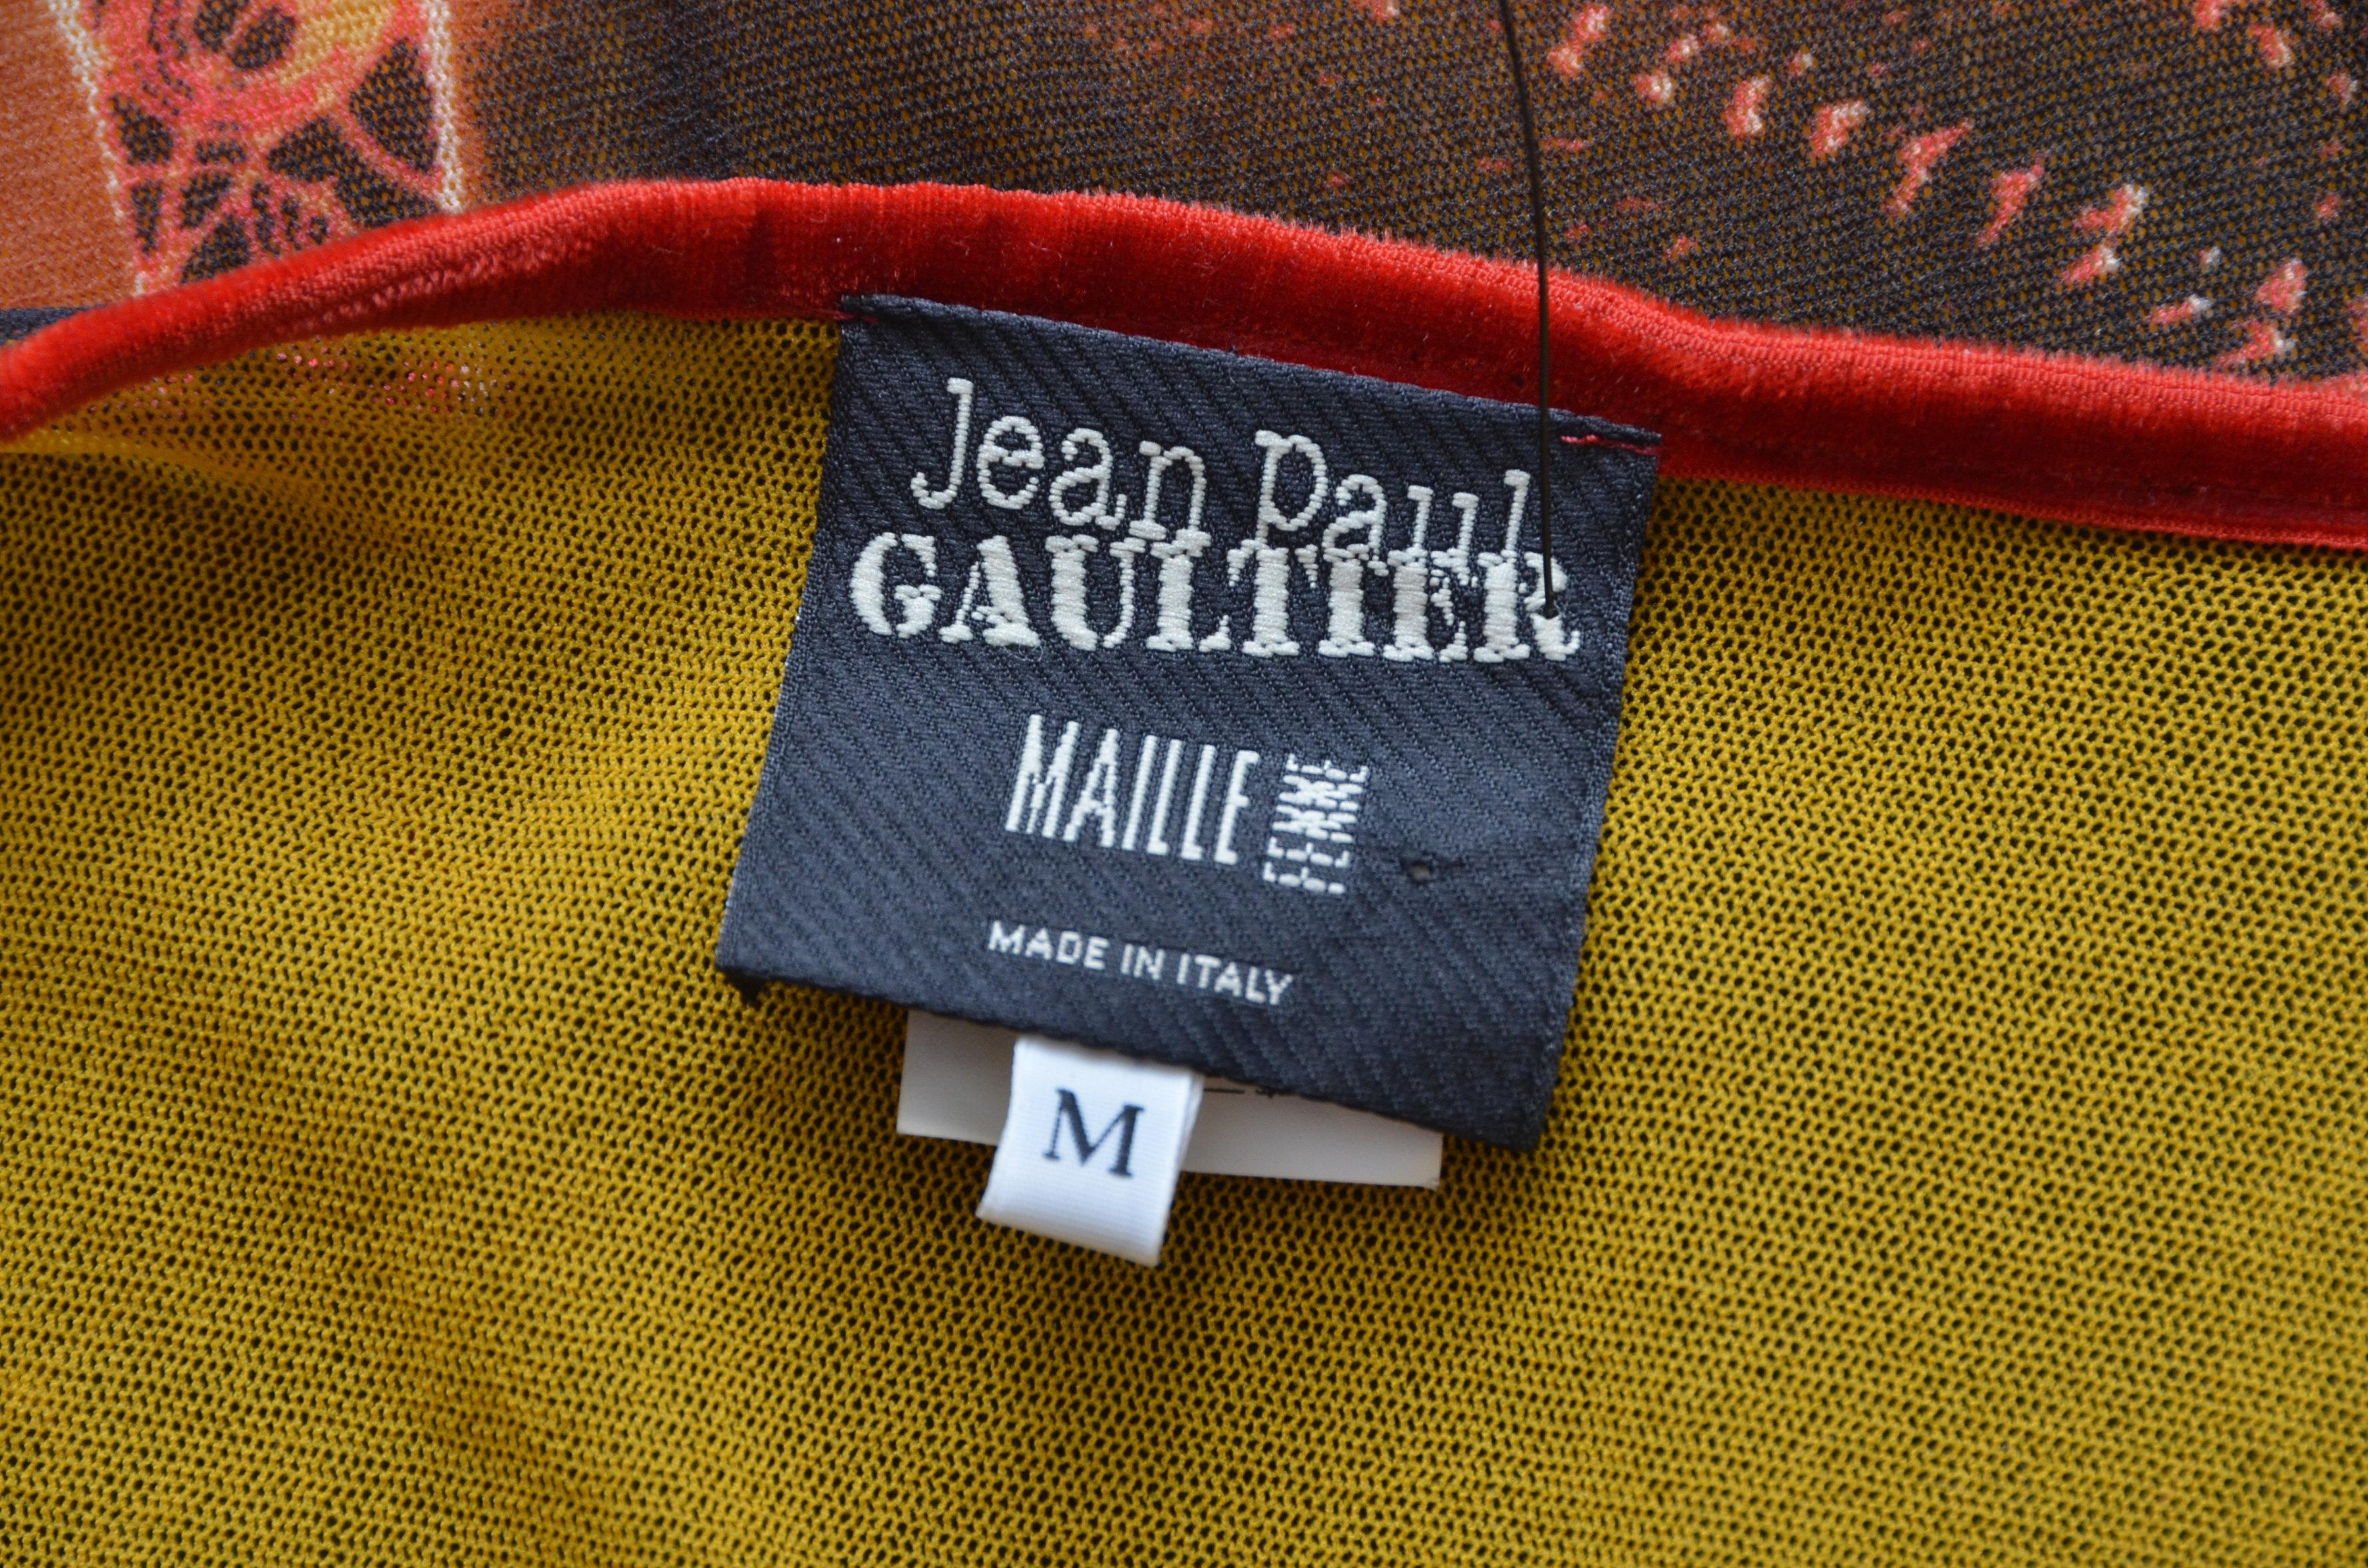 Marron Jean Paul Gaultier  Paris Tour Eiffel City Lights Print  Robe     Taille  M en vente